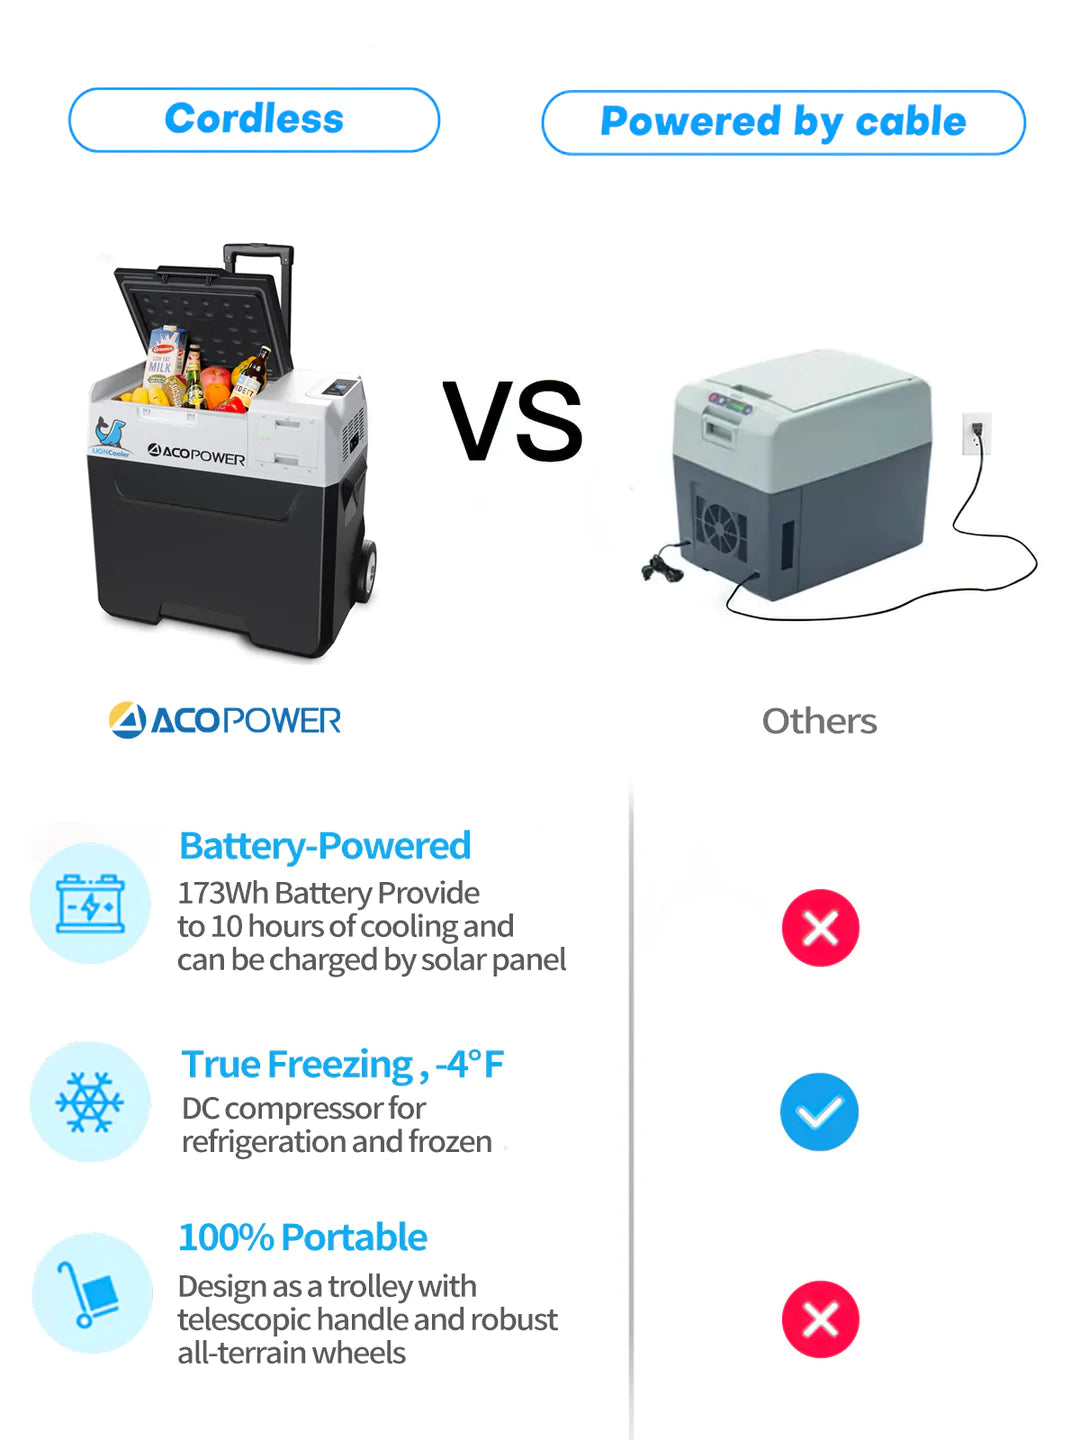 ACOPower LionCooler X50A Portable Solar Fridge Freezer, 52 Quarts - Smart Nature Store